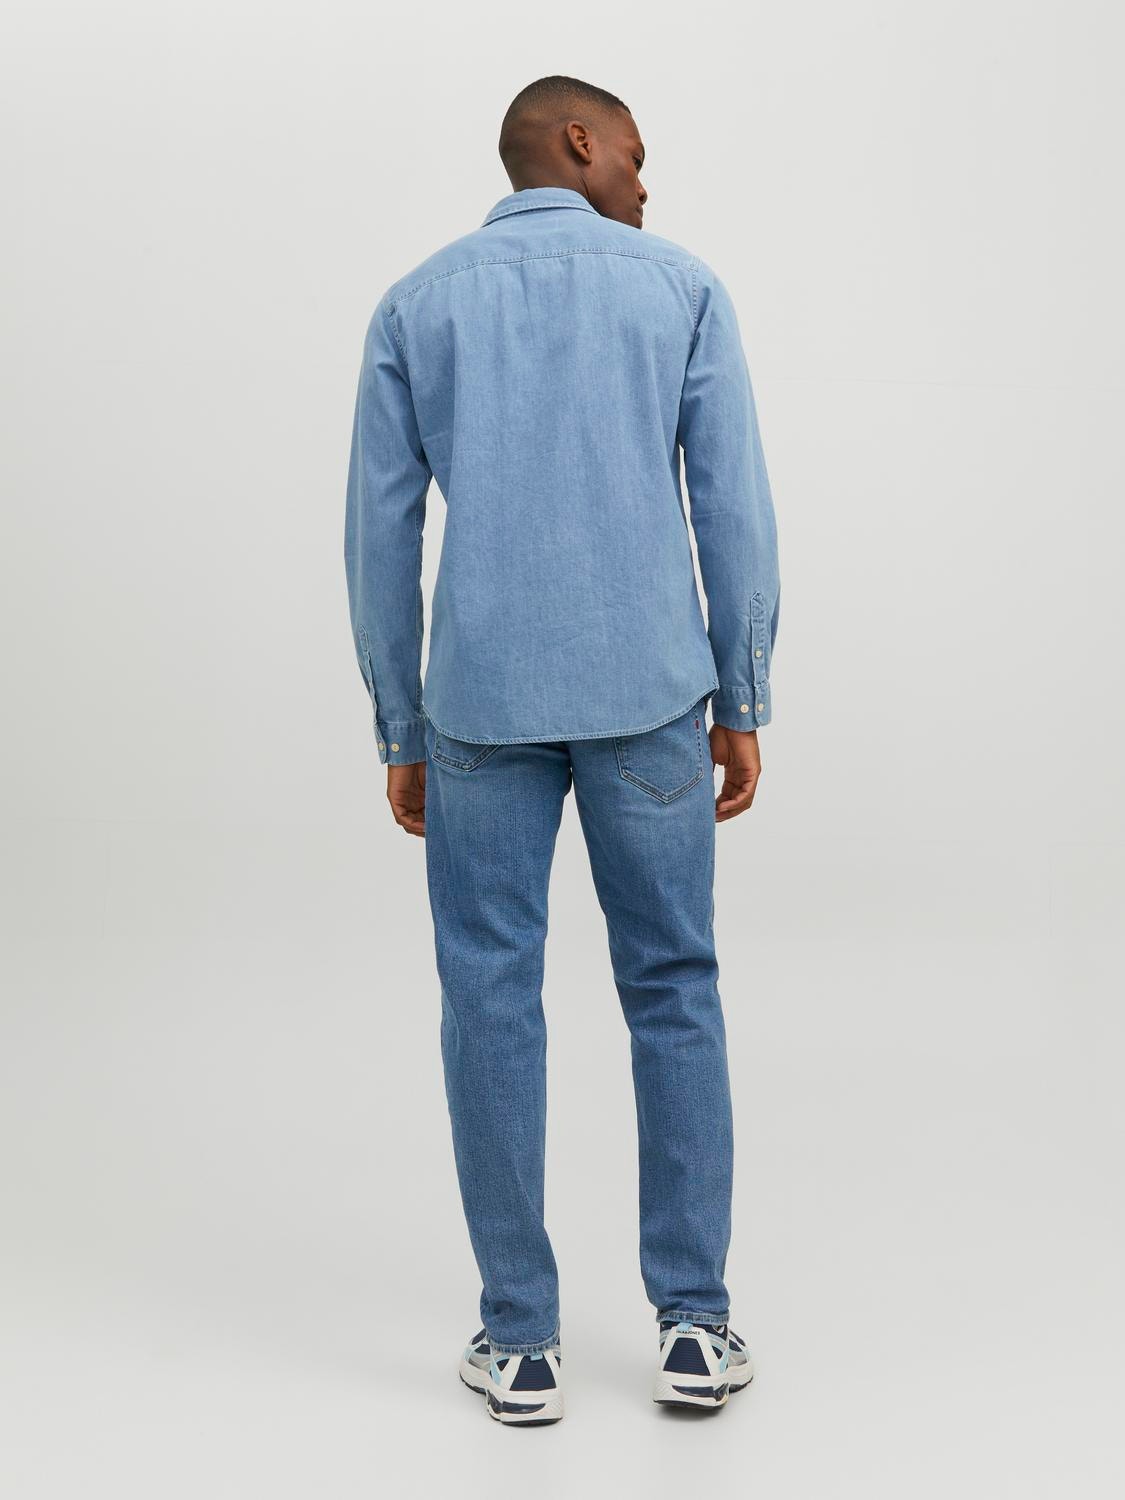 Jack & Jones RDD Regular Fit Džinsiniai marškiniai -Light Blue Denim - 12226632